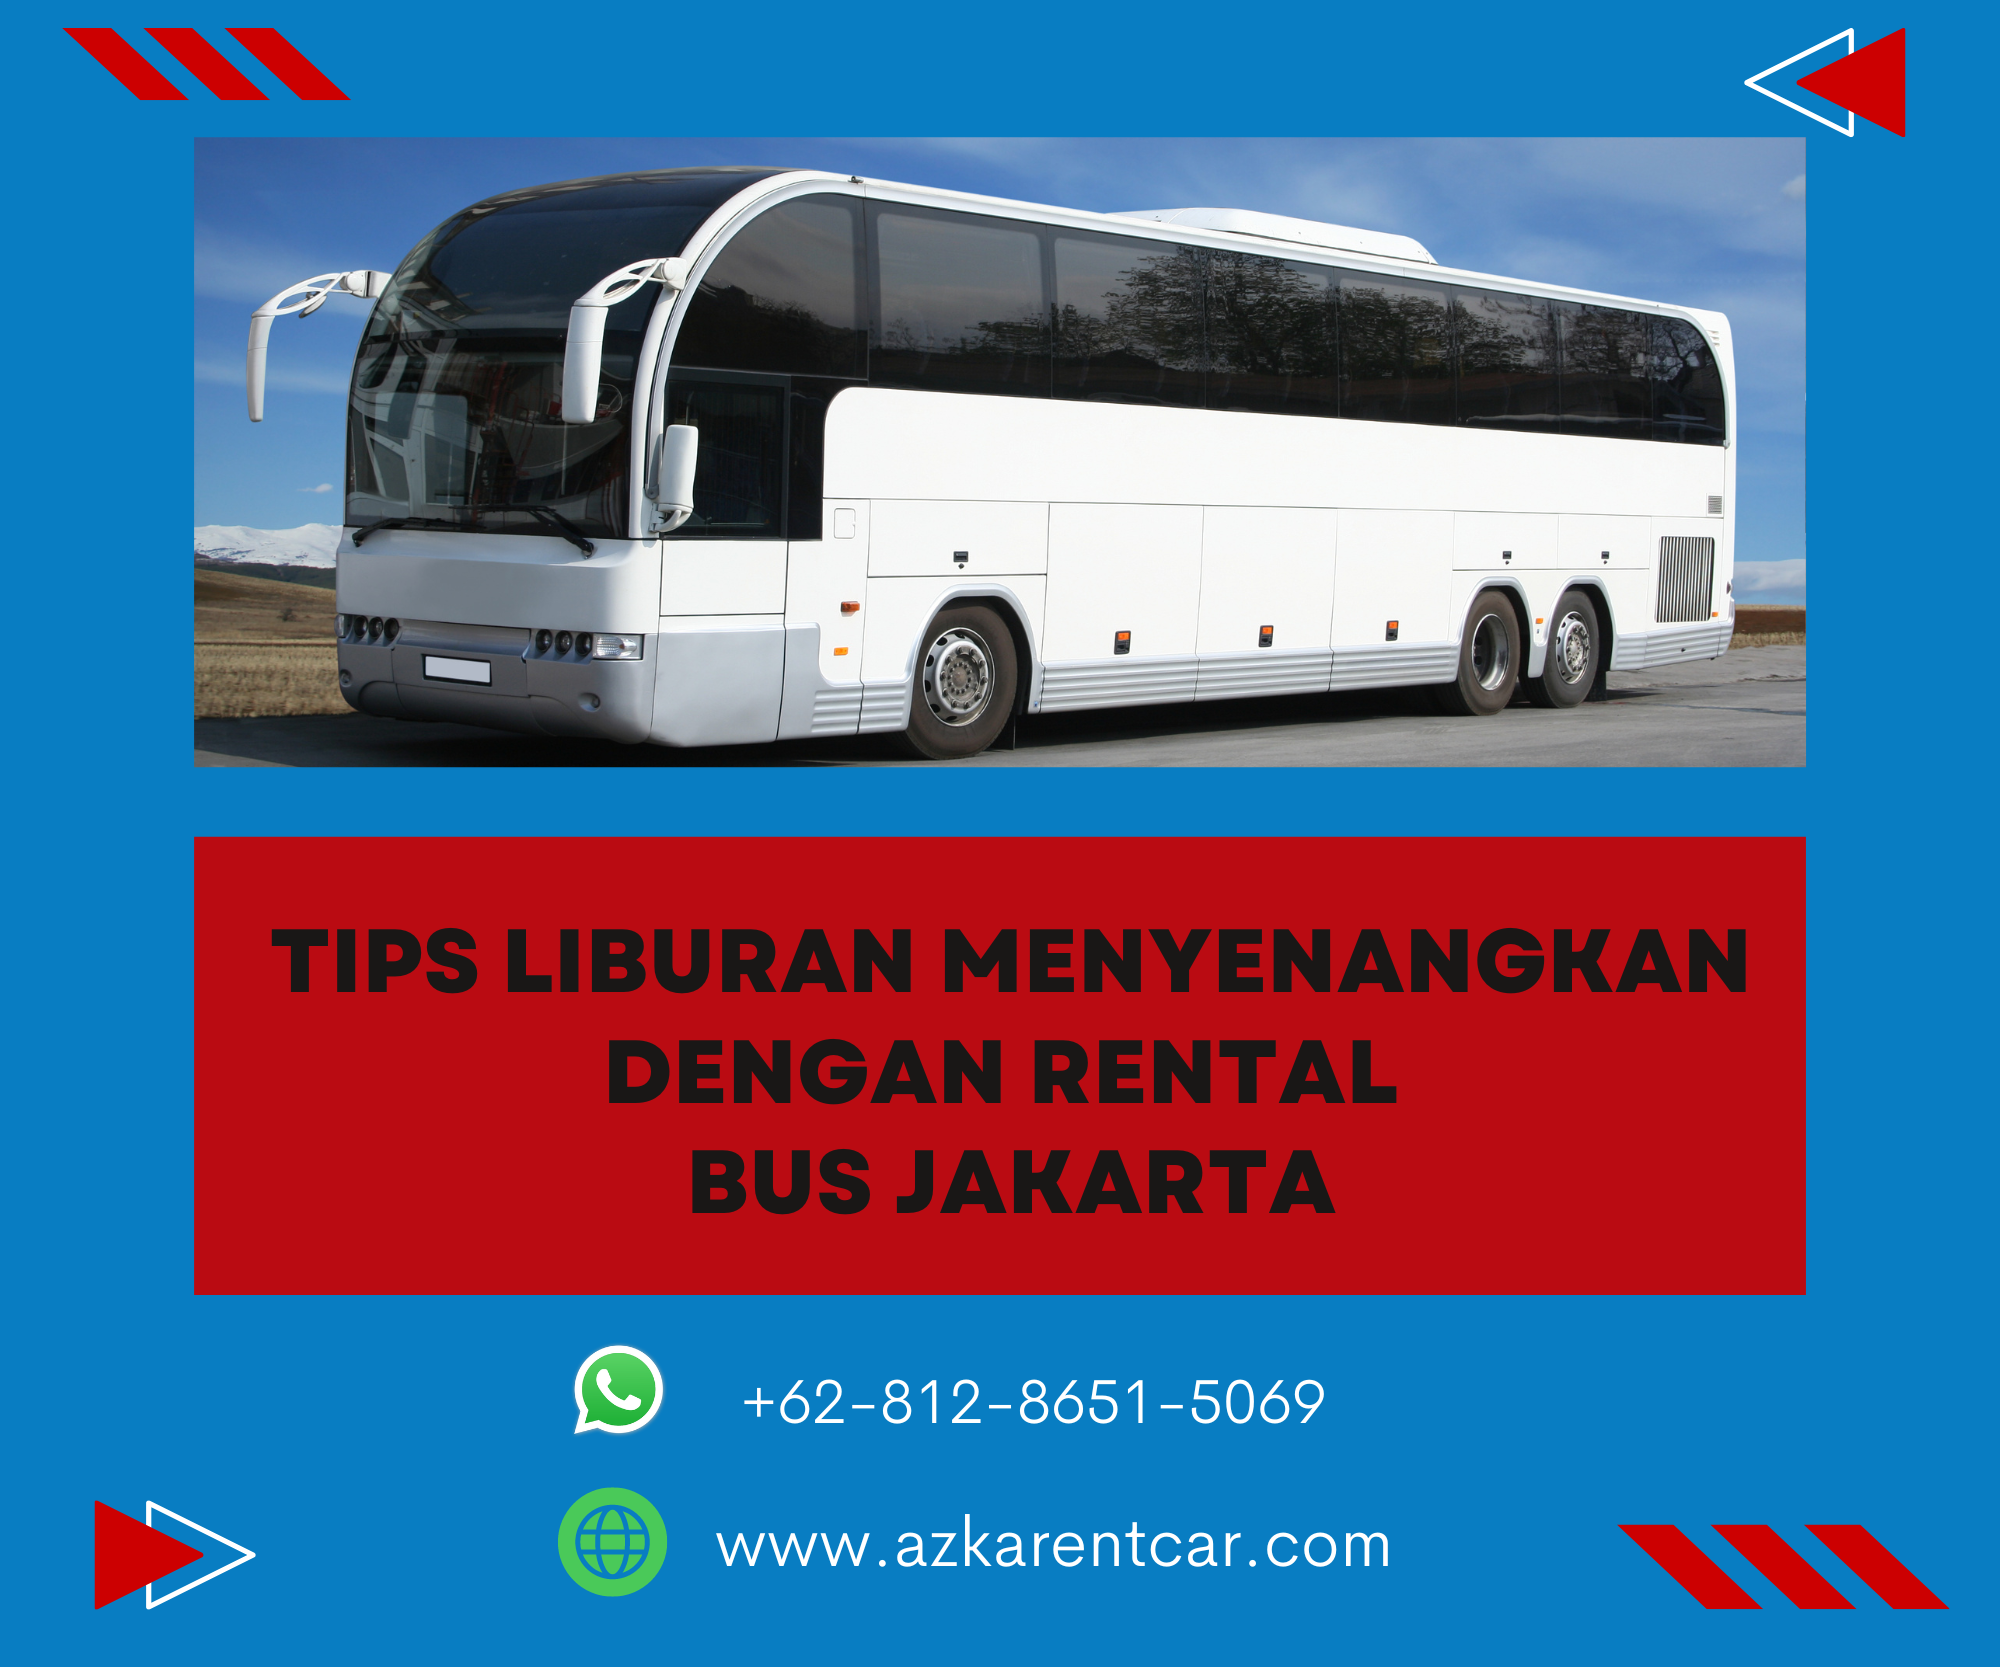 TIps Liburan Menyenangkan dengan Rental Bus Jakarta